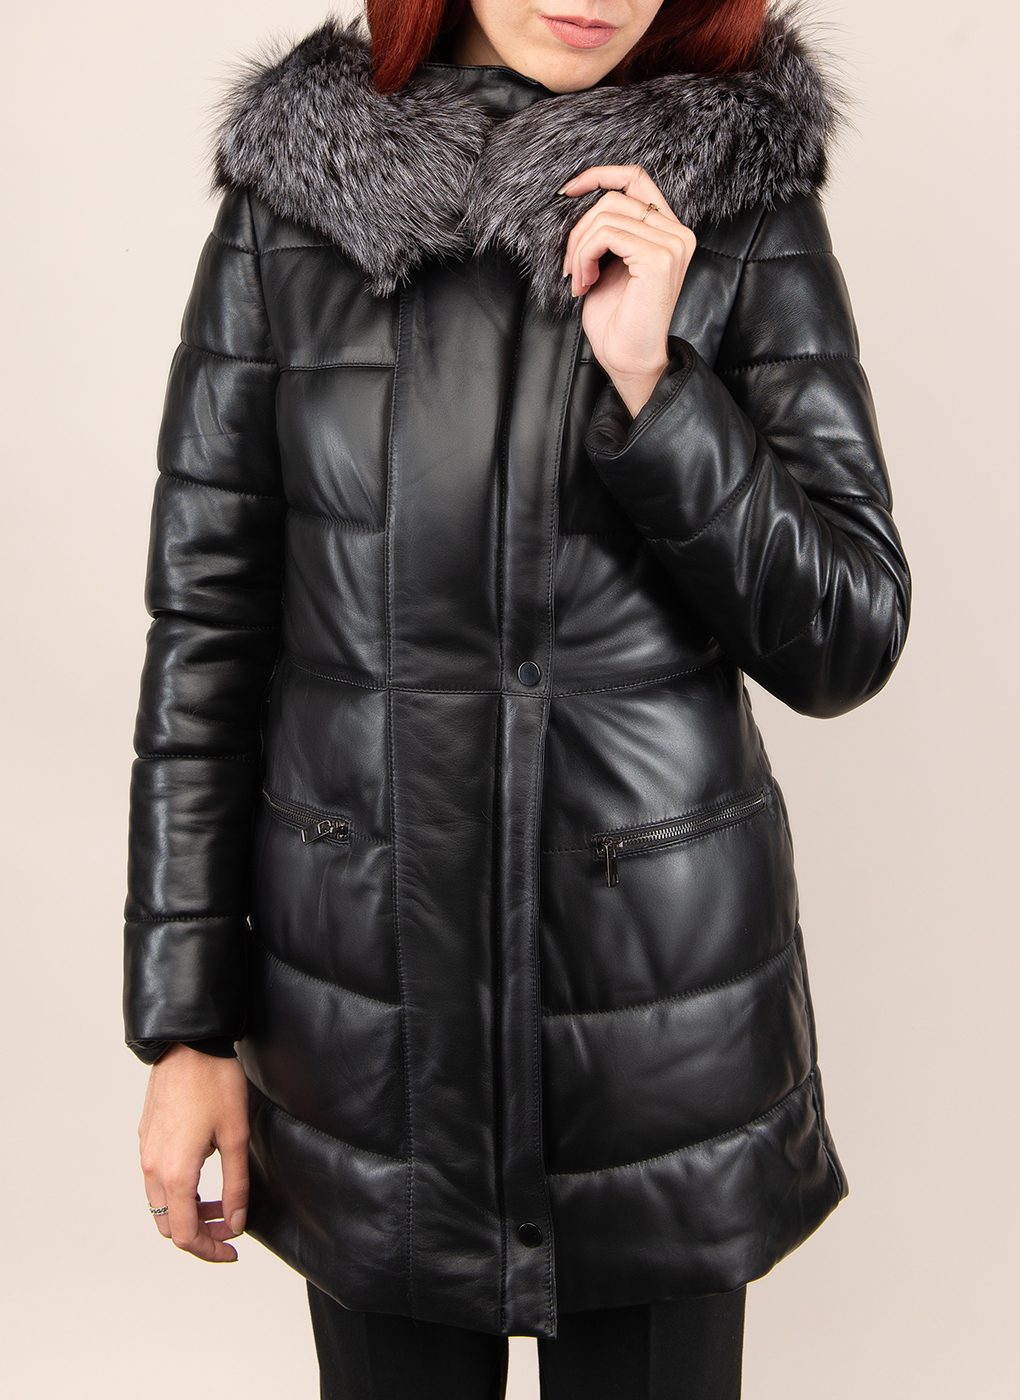 Кожаная куртка женская Imperiafabrik 40862 черная 42 RU